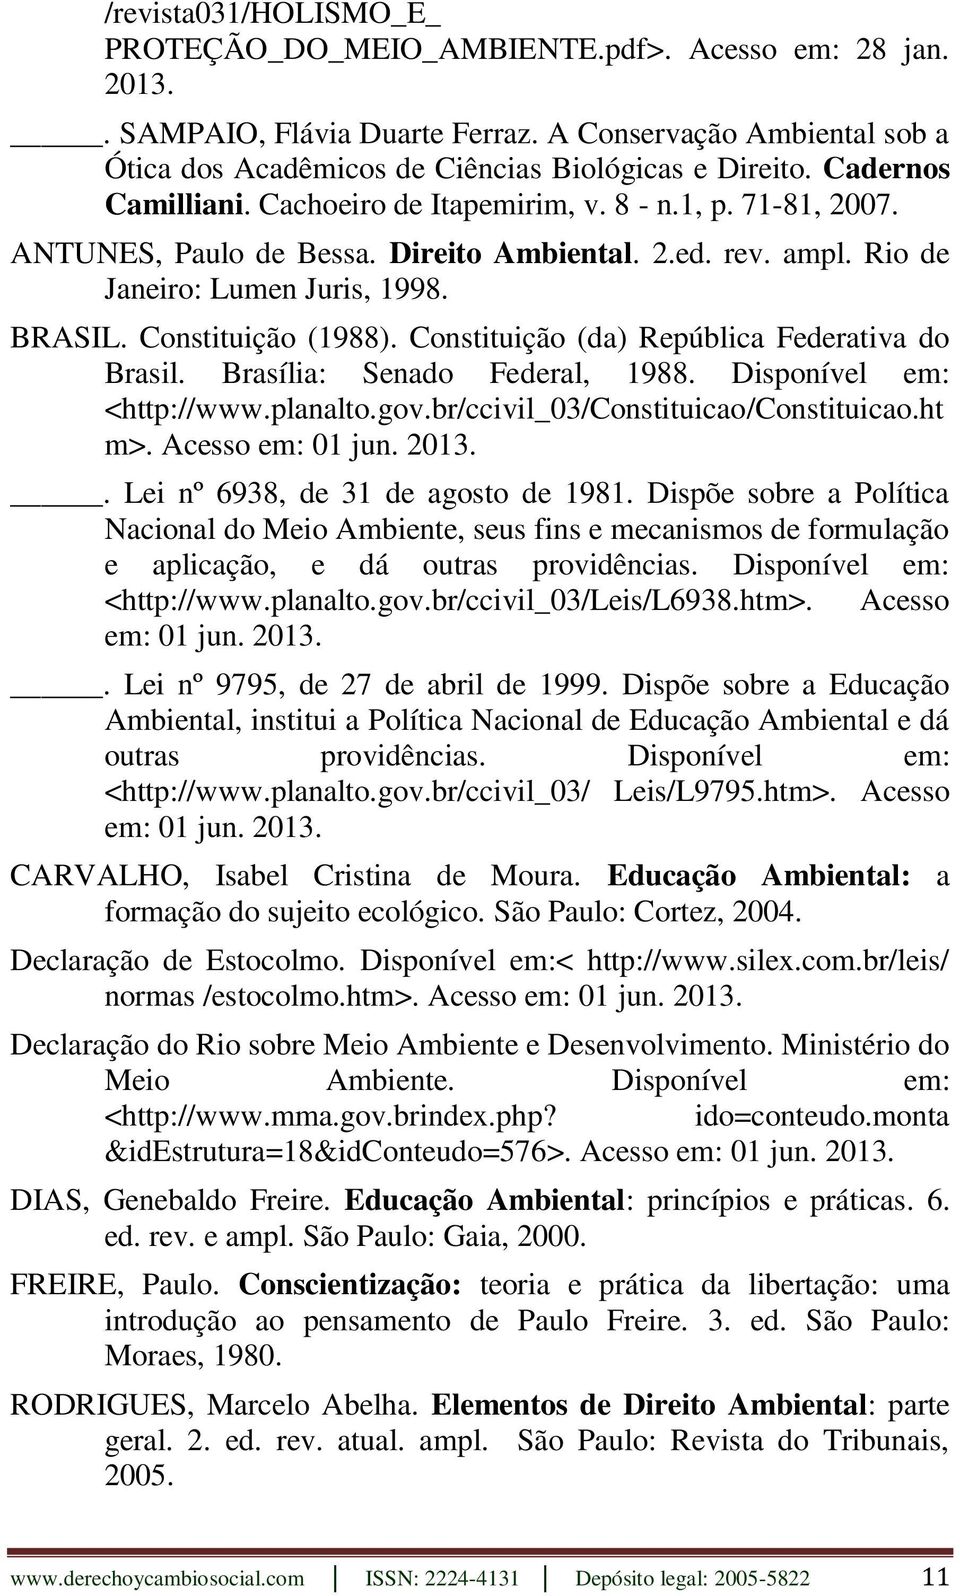 Constituição (da) República Federativa do Brasil. Brasília: Senado Federal, 1988. Disponível em: <http://www.planalto.gov.br/ccivil_03/constituicao/constituicao.ht m>. Acesso em: 01 jun. 2013.